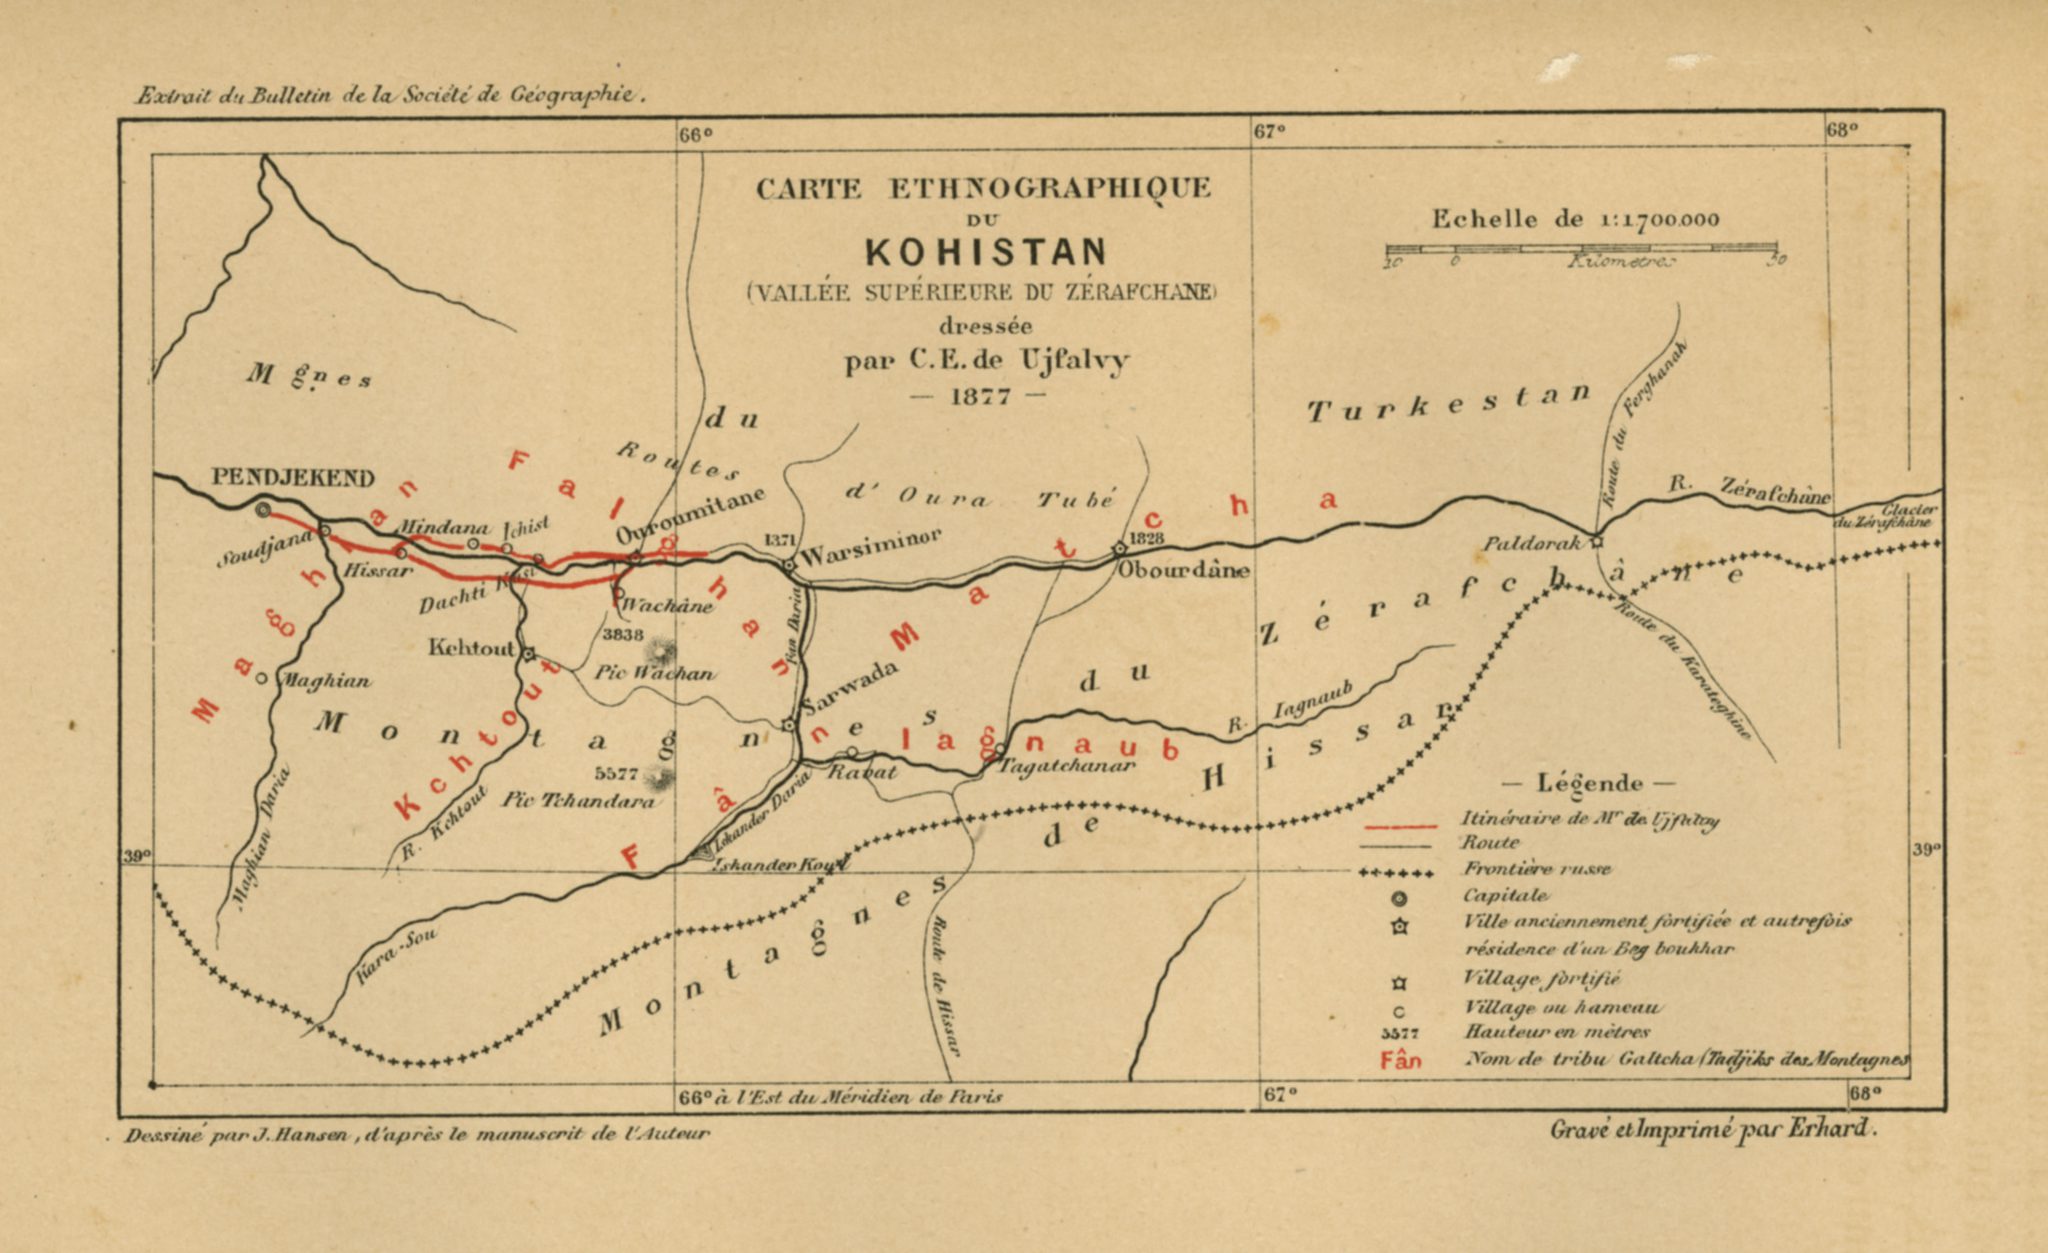 Carte ethnographique du Kohistan 1878